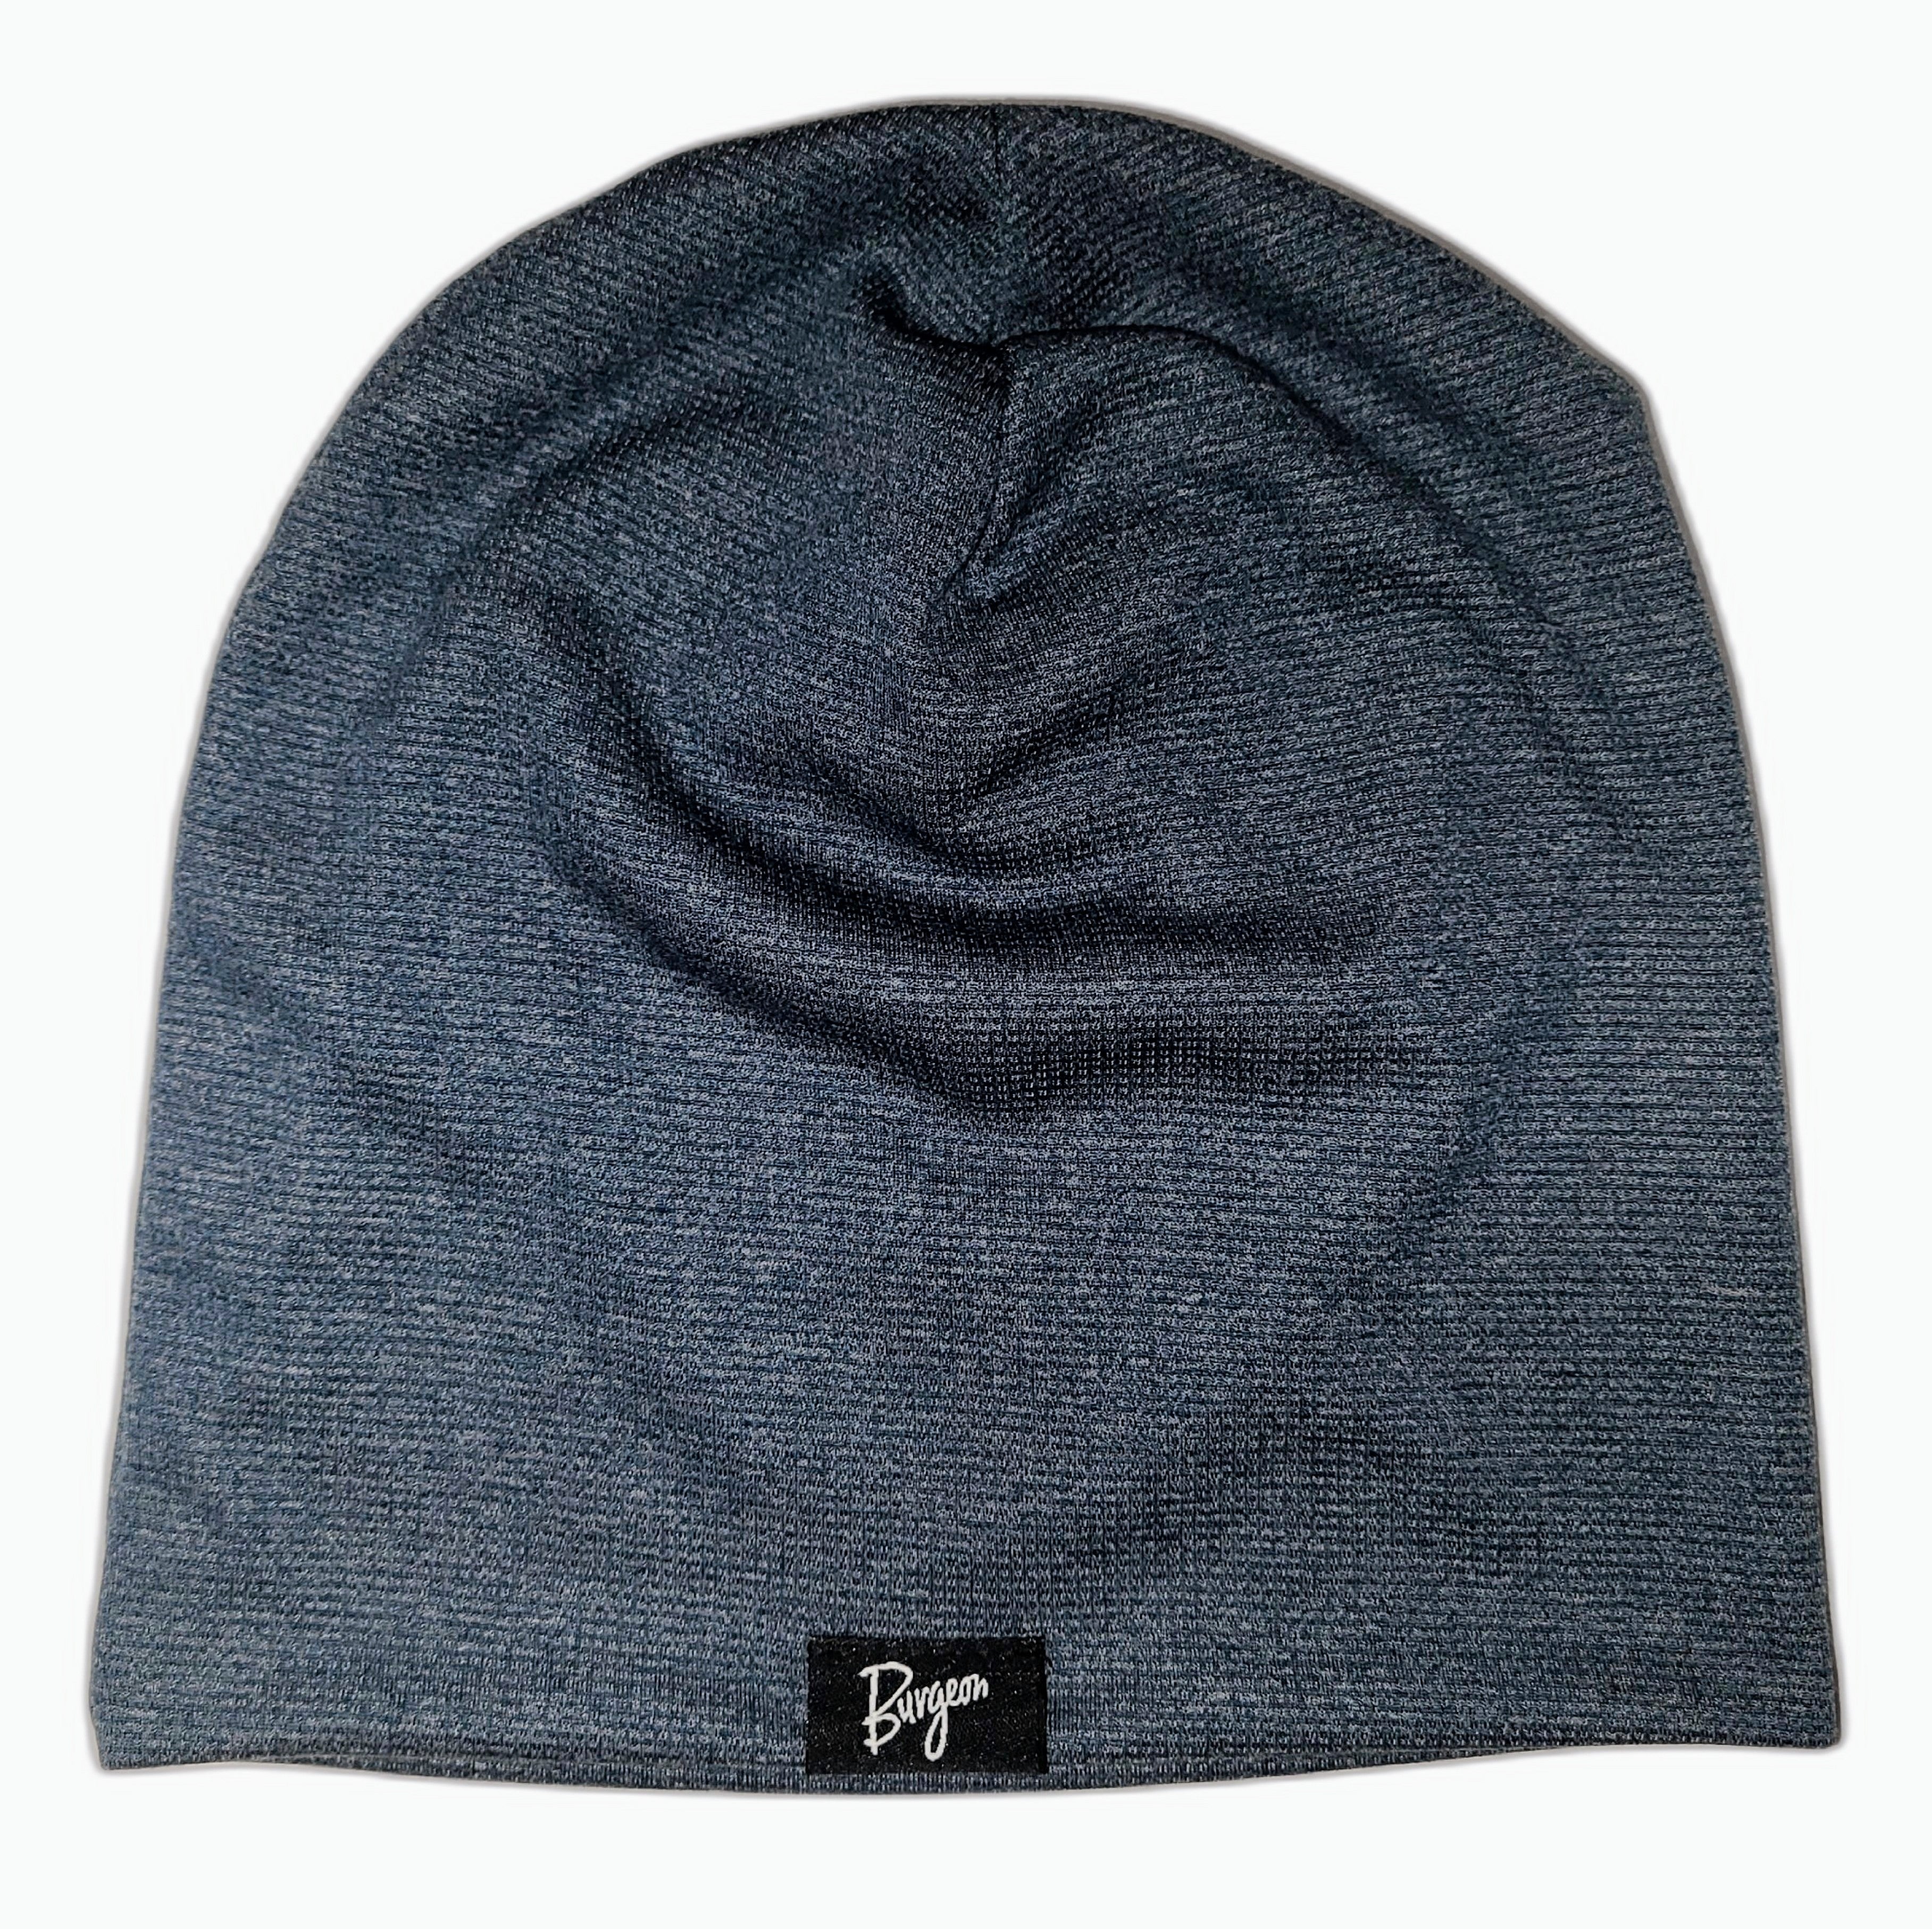 Power Burgeon – Beanie Outdoor Hat Wool